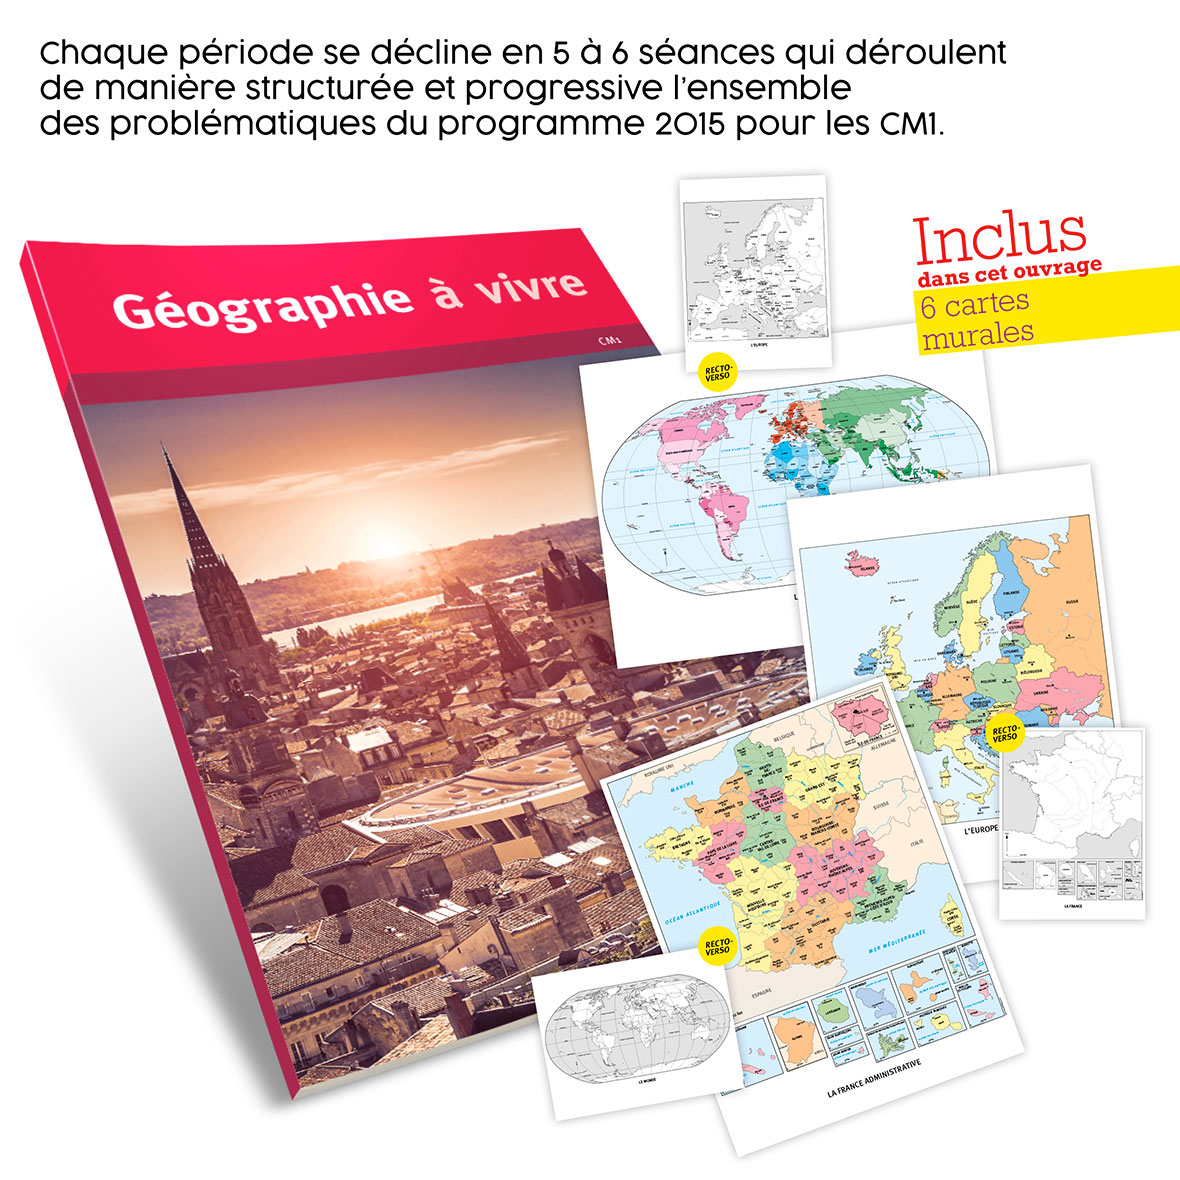 Geographie a vivre cm1 miniature 2 acces editions